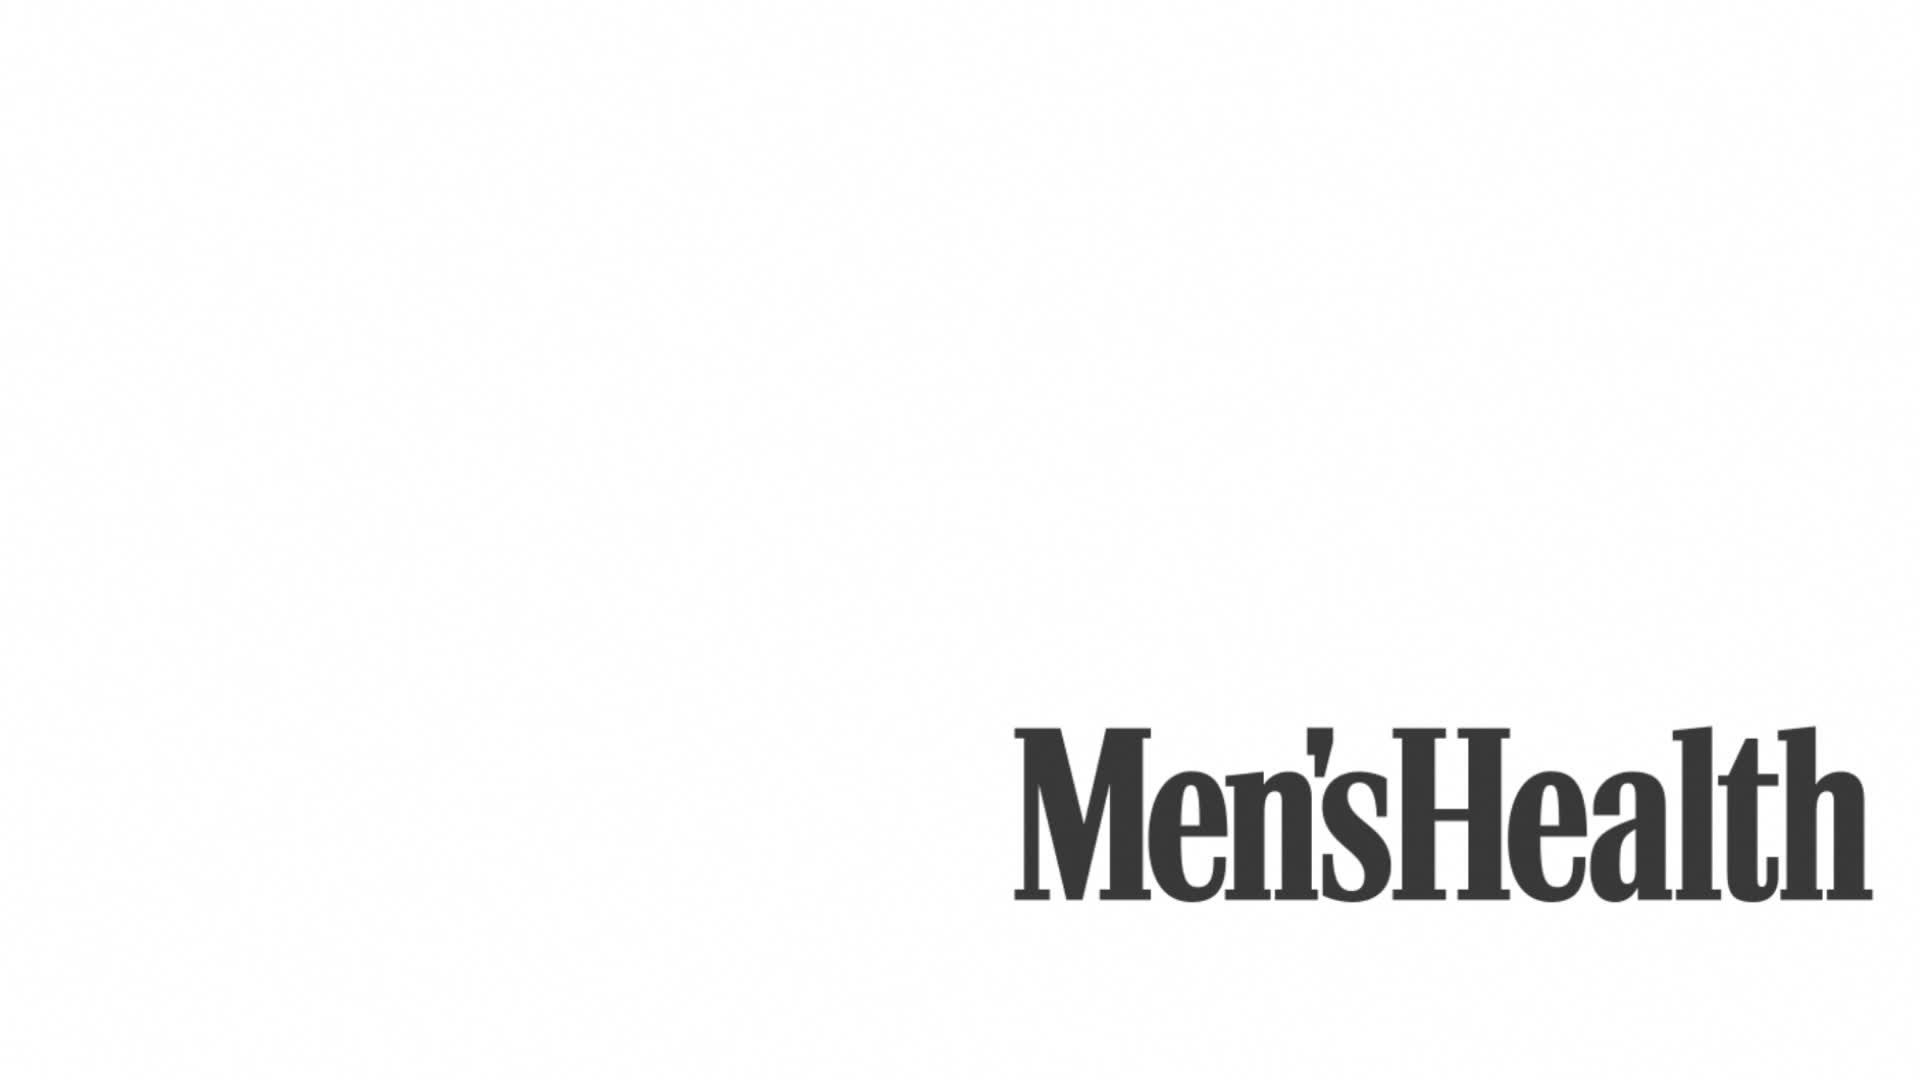 vista previa de la sección de EE. UU. de Men's Health: todas las secciones y videos